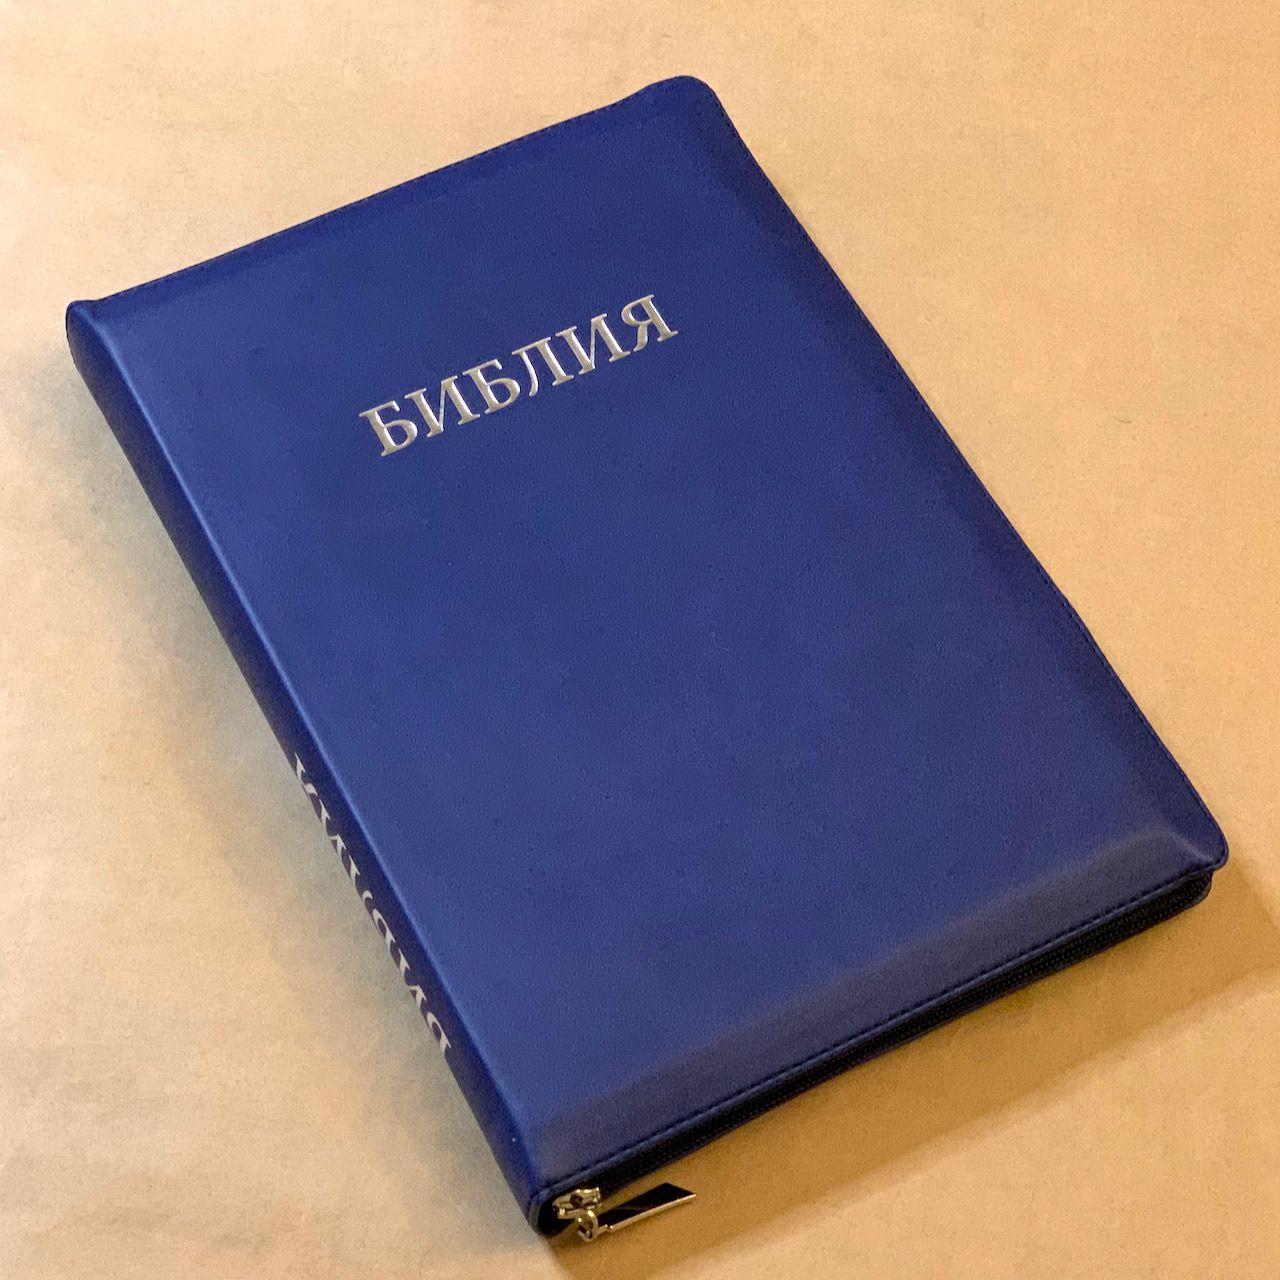 Библия 077z формат, переплет из искусственной кожи на молнии, цвет синий,, большой формат, 180*260 мм, цветные карты, крупный шрифт